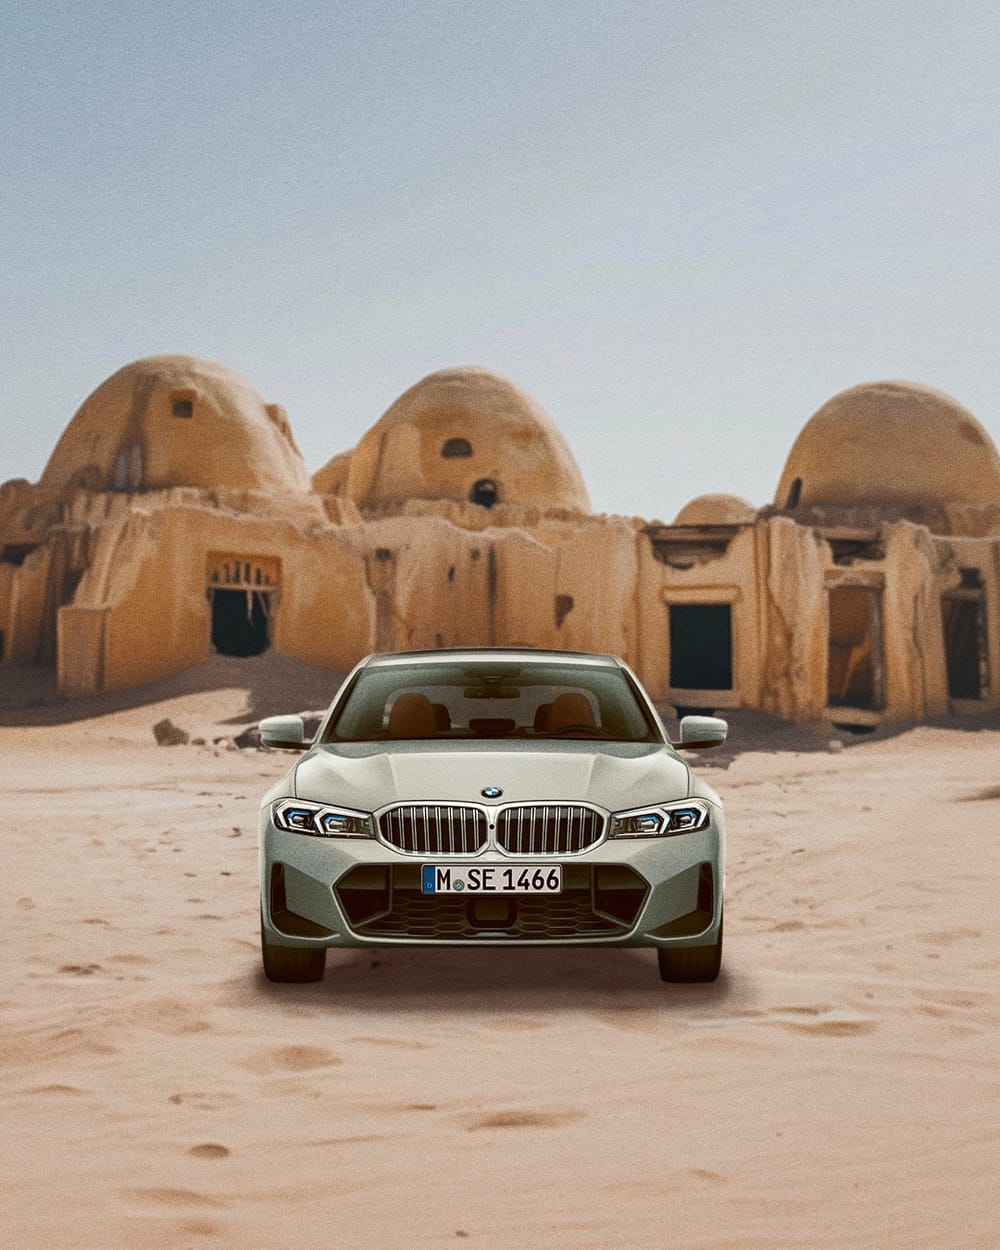 BMW: 5% lager na cijfers - visie op het aandeel - update